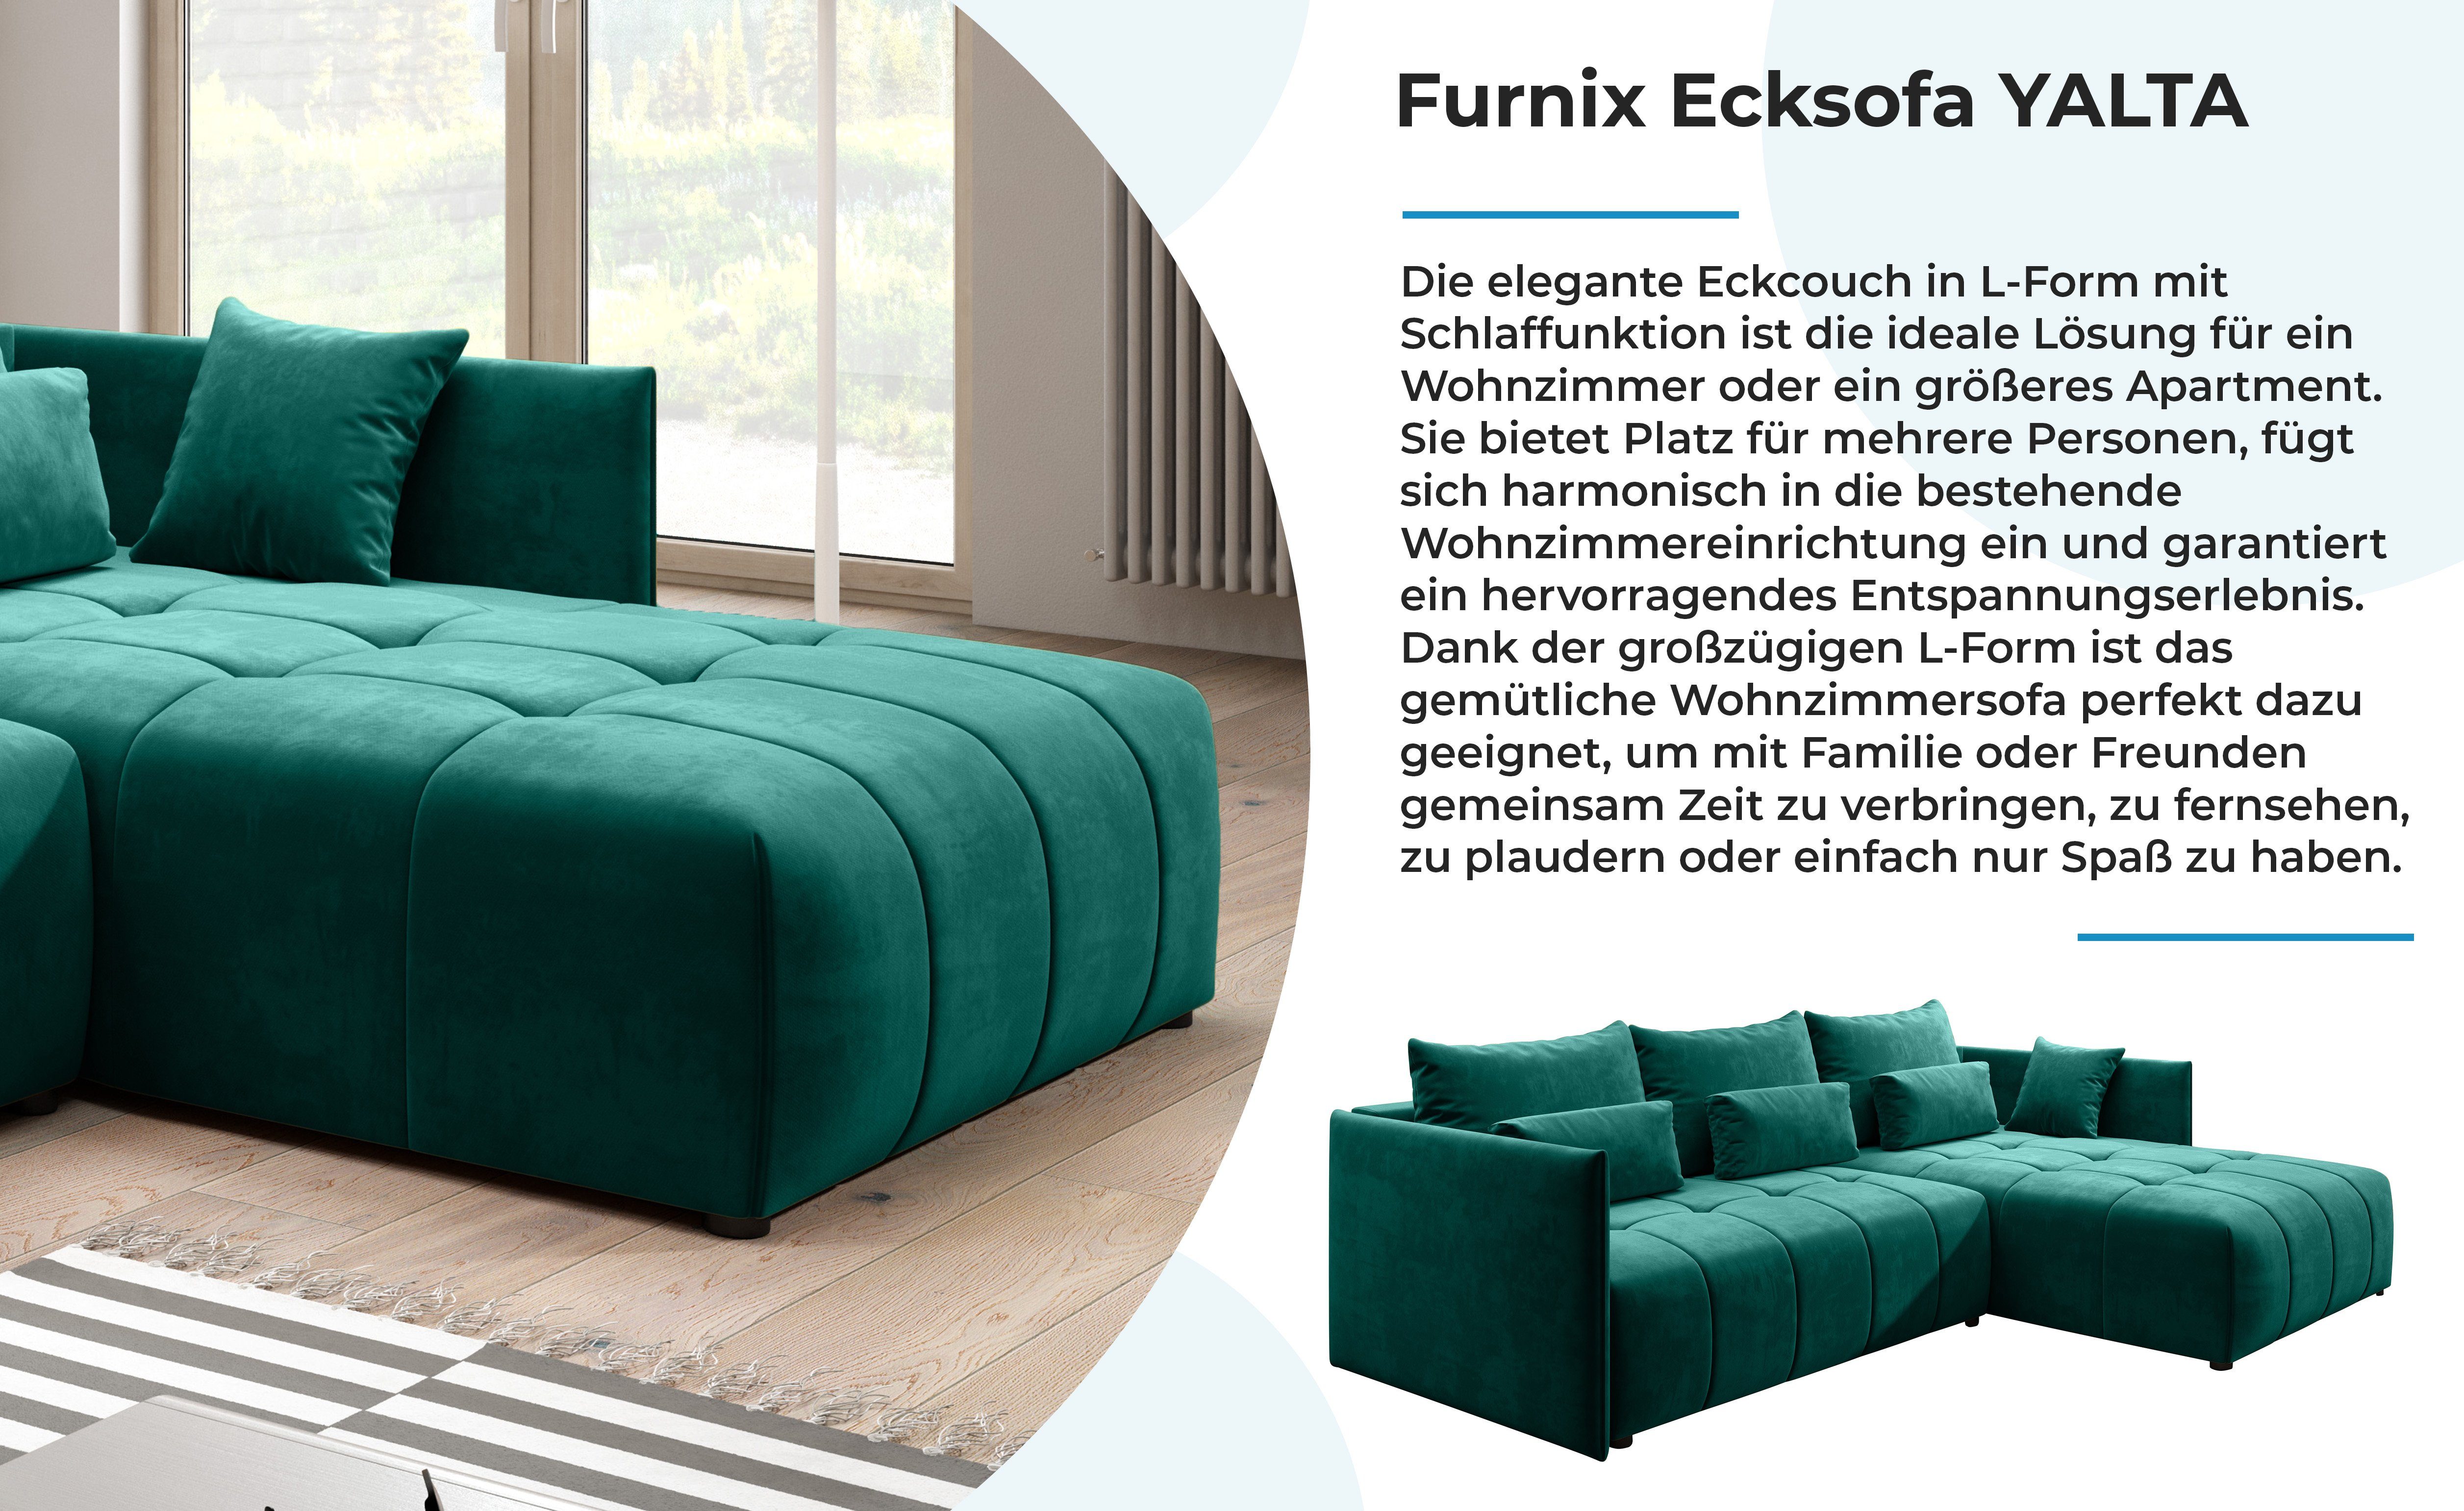 Schlafsofa und Europe Grün YALTA Couch Bettkasten mit in Ecksofa Furnix Made Kissen, MH ausziehbar 37